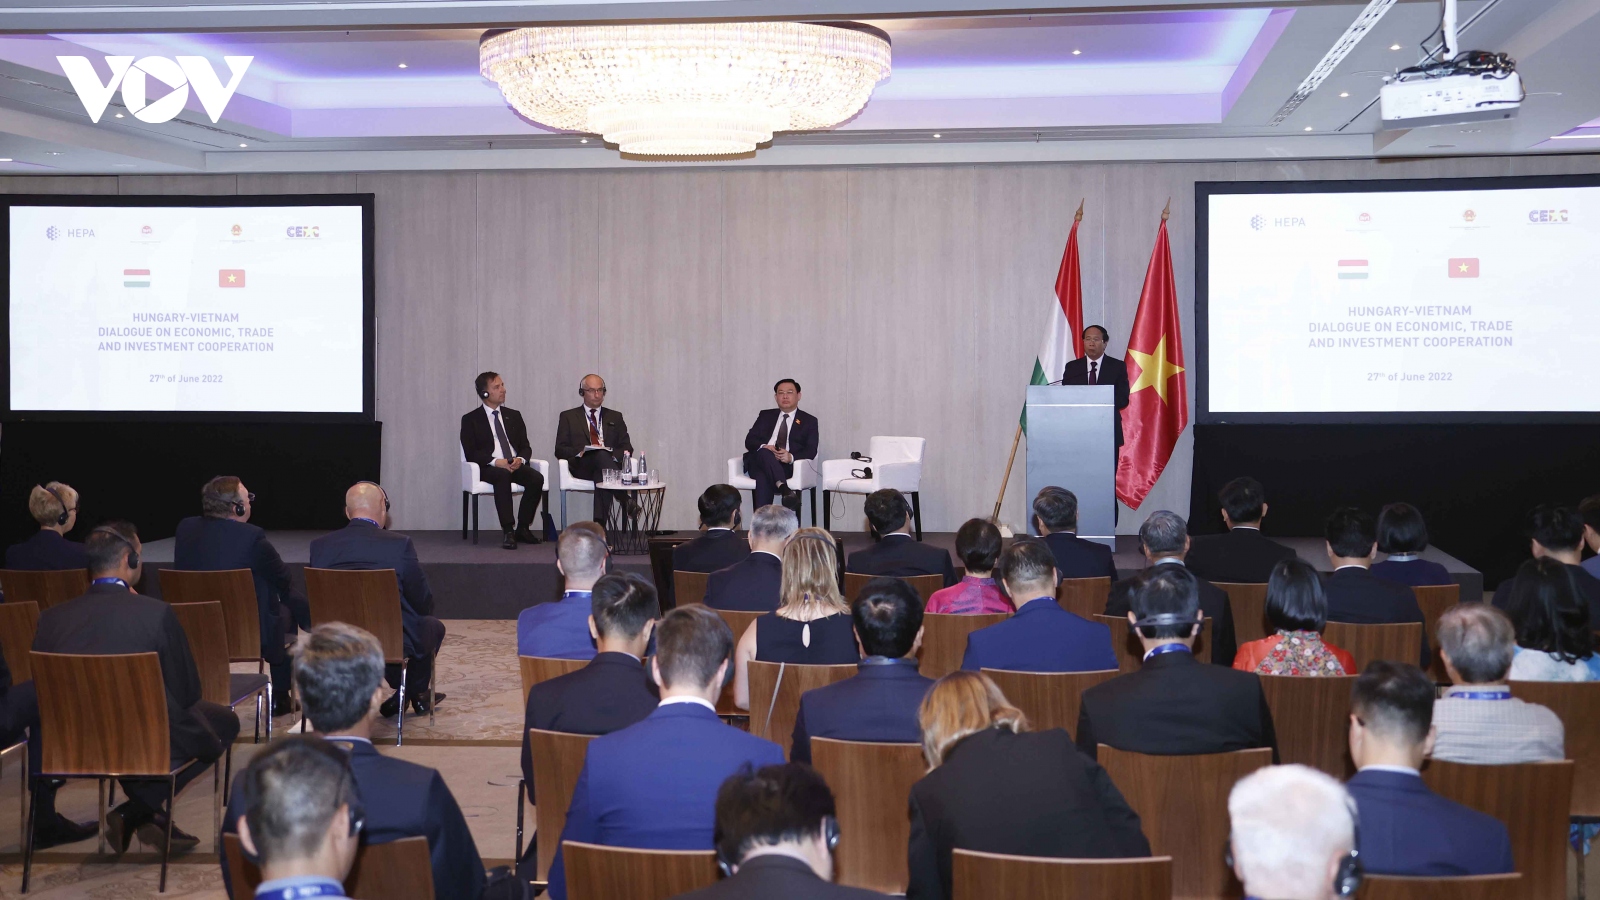 Chủ tịch Quốc hội dự Tọa đàm cấp cao Việt Nam – Hungary về kinh tế và thương mại